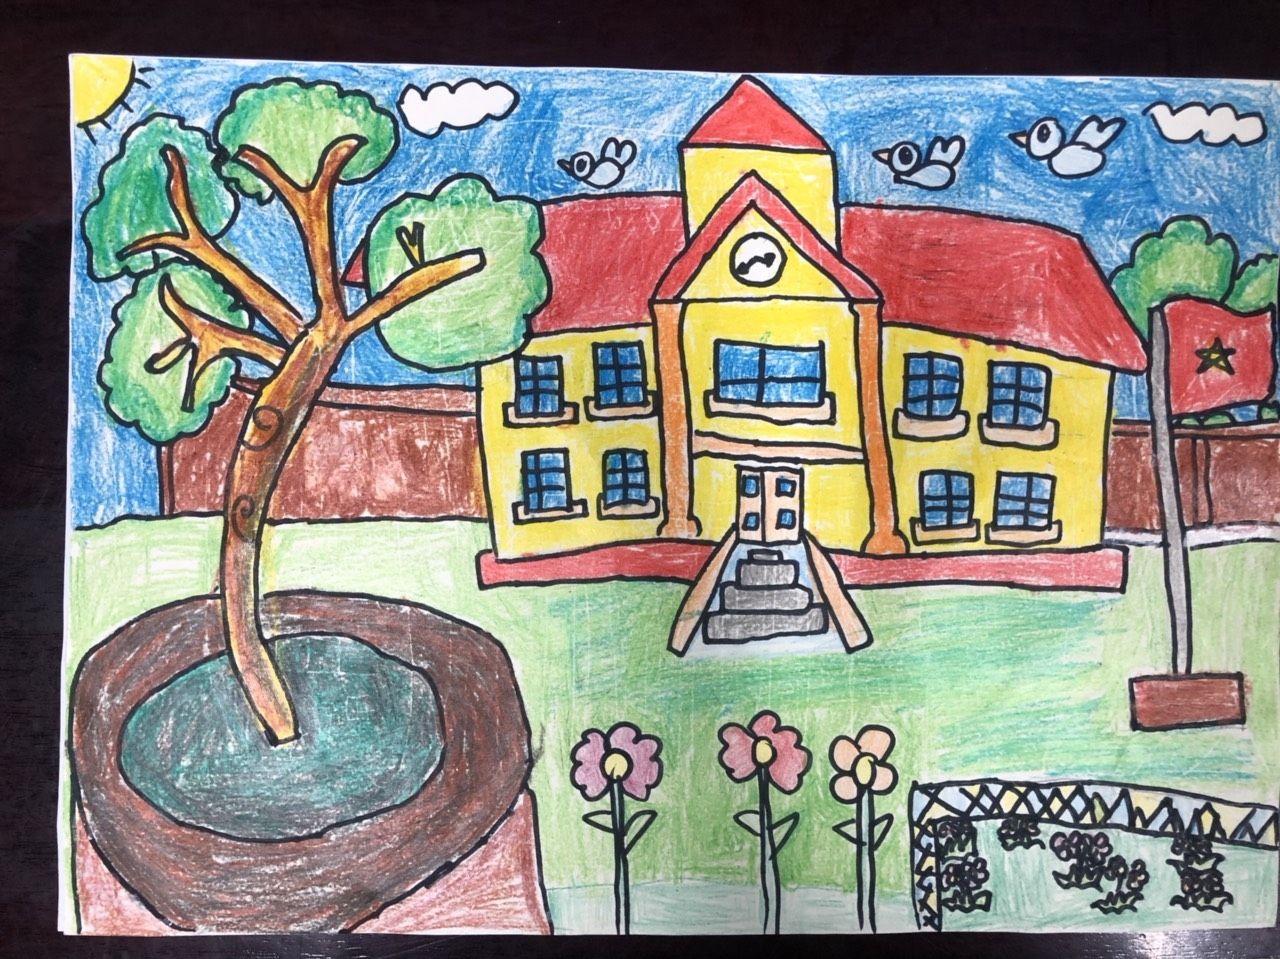 Tranh vẽ trường tiểu học đẹp nhất – HTNC